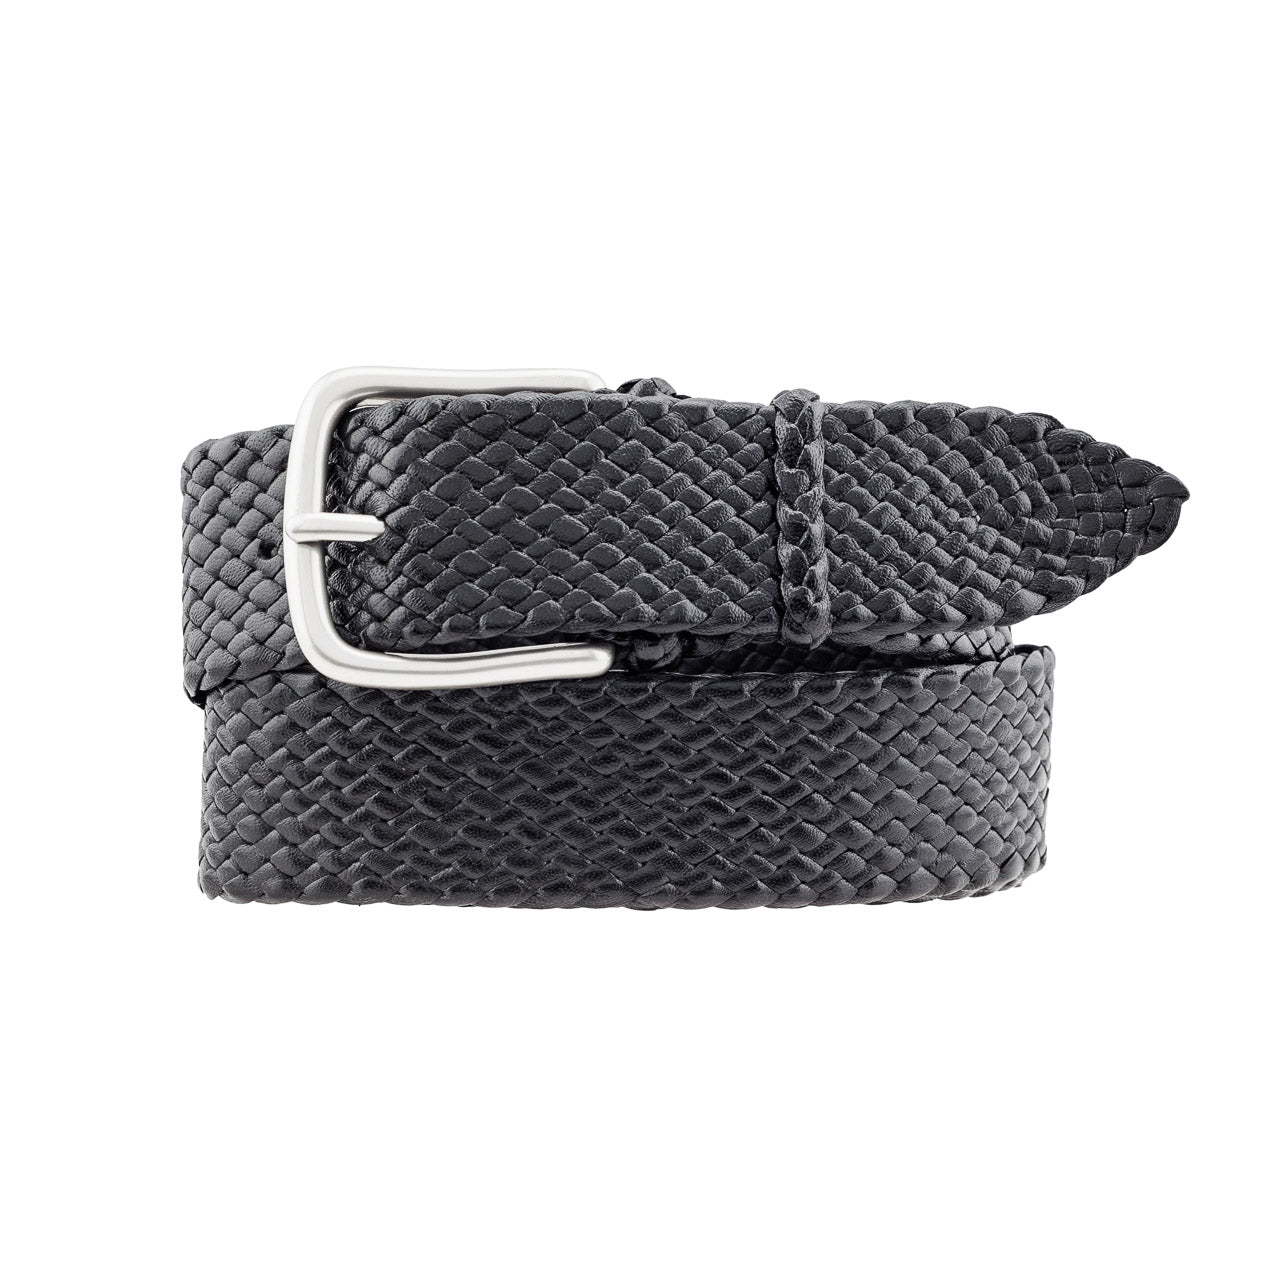 Black Mens Sandown belt: Premium Kangaroo Leather belt, 14 strands, hand-plaited in Brisbane, Australia. Timeless, refined outback feel. Available in Black or Tan.